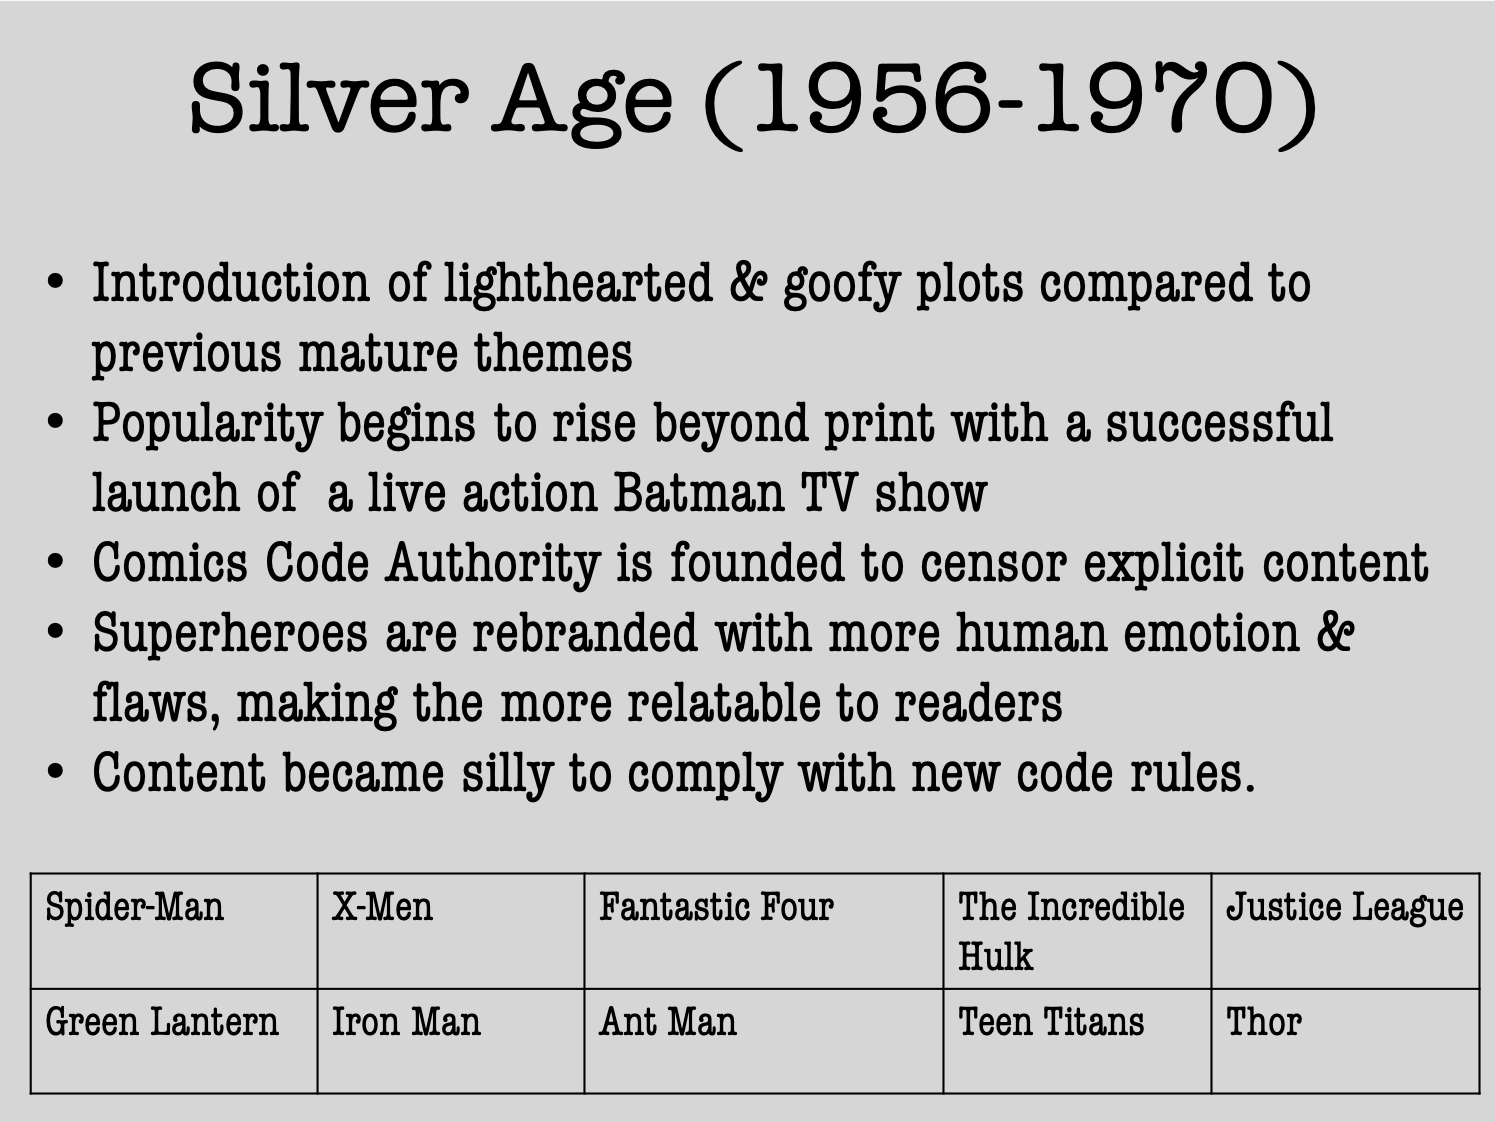 Comic books in the silver age (1956-1970)